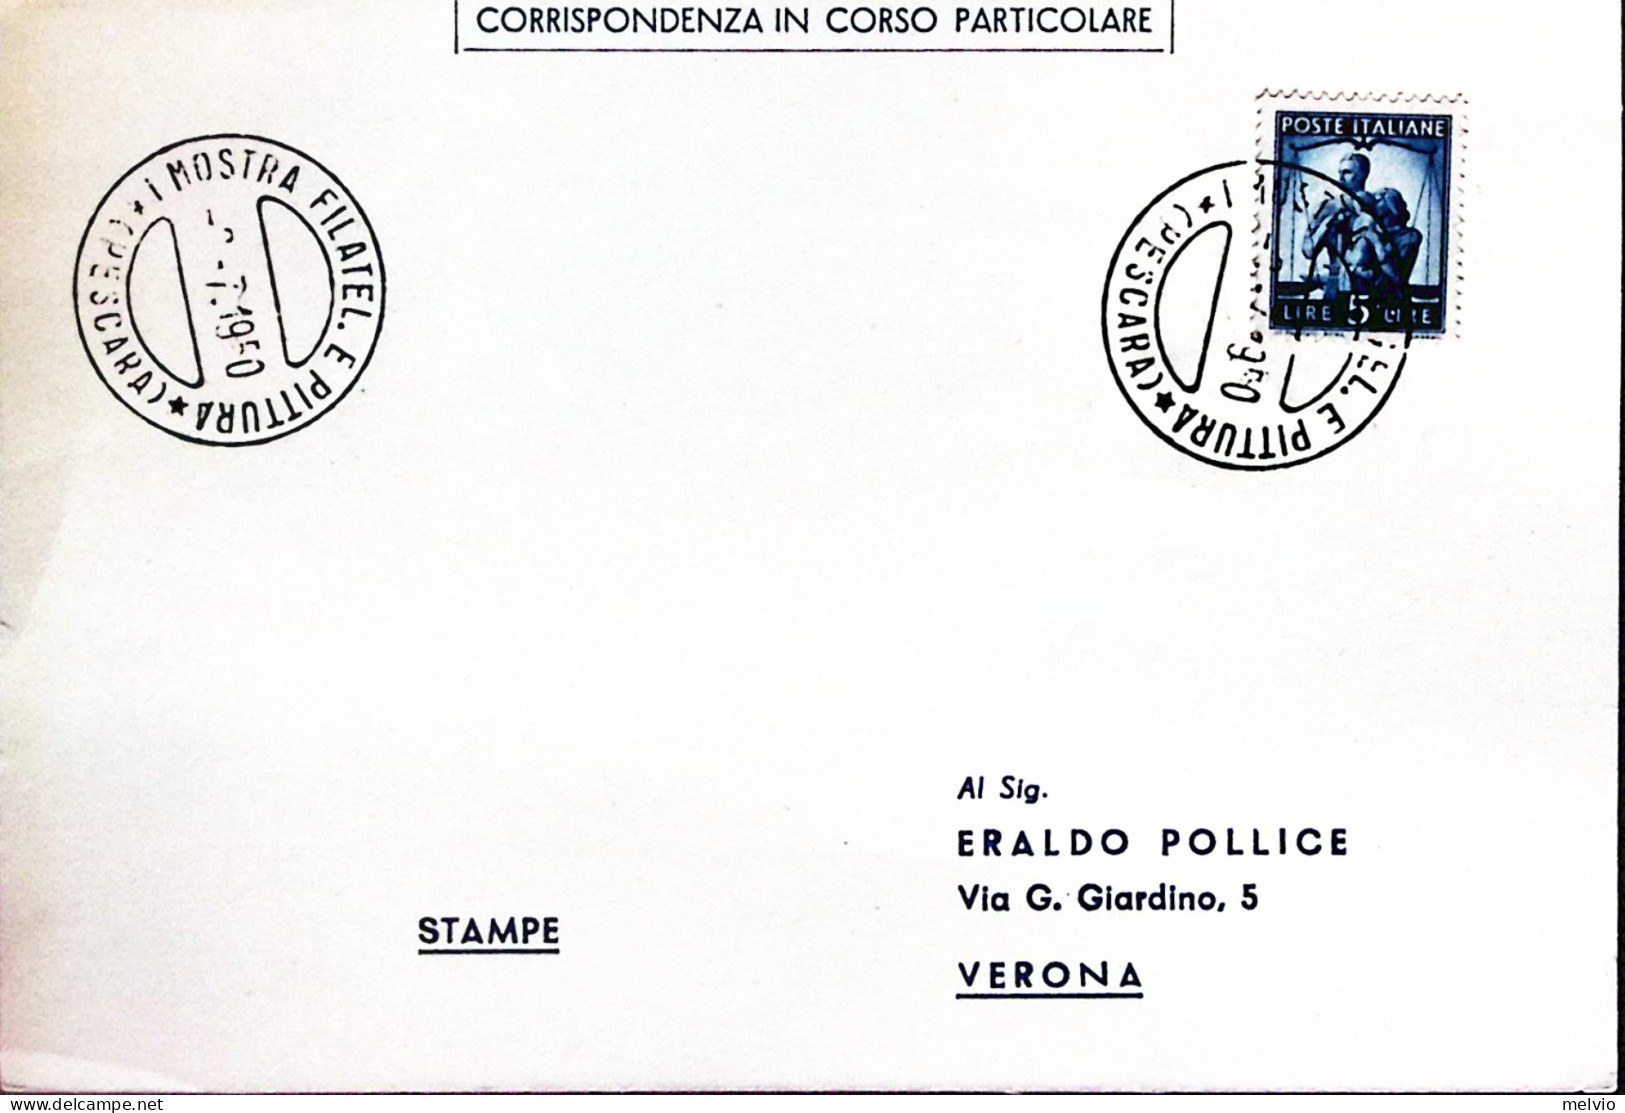 1950-PESCARA 1 Mostra Filatelica E Pittura (2.7) Annullo Speciale Su Cartolina - Expositions